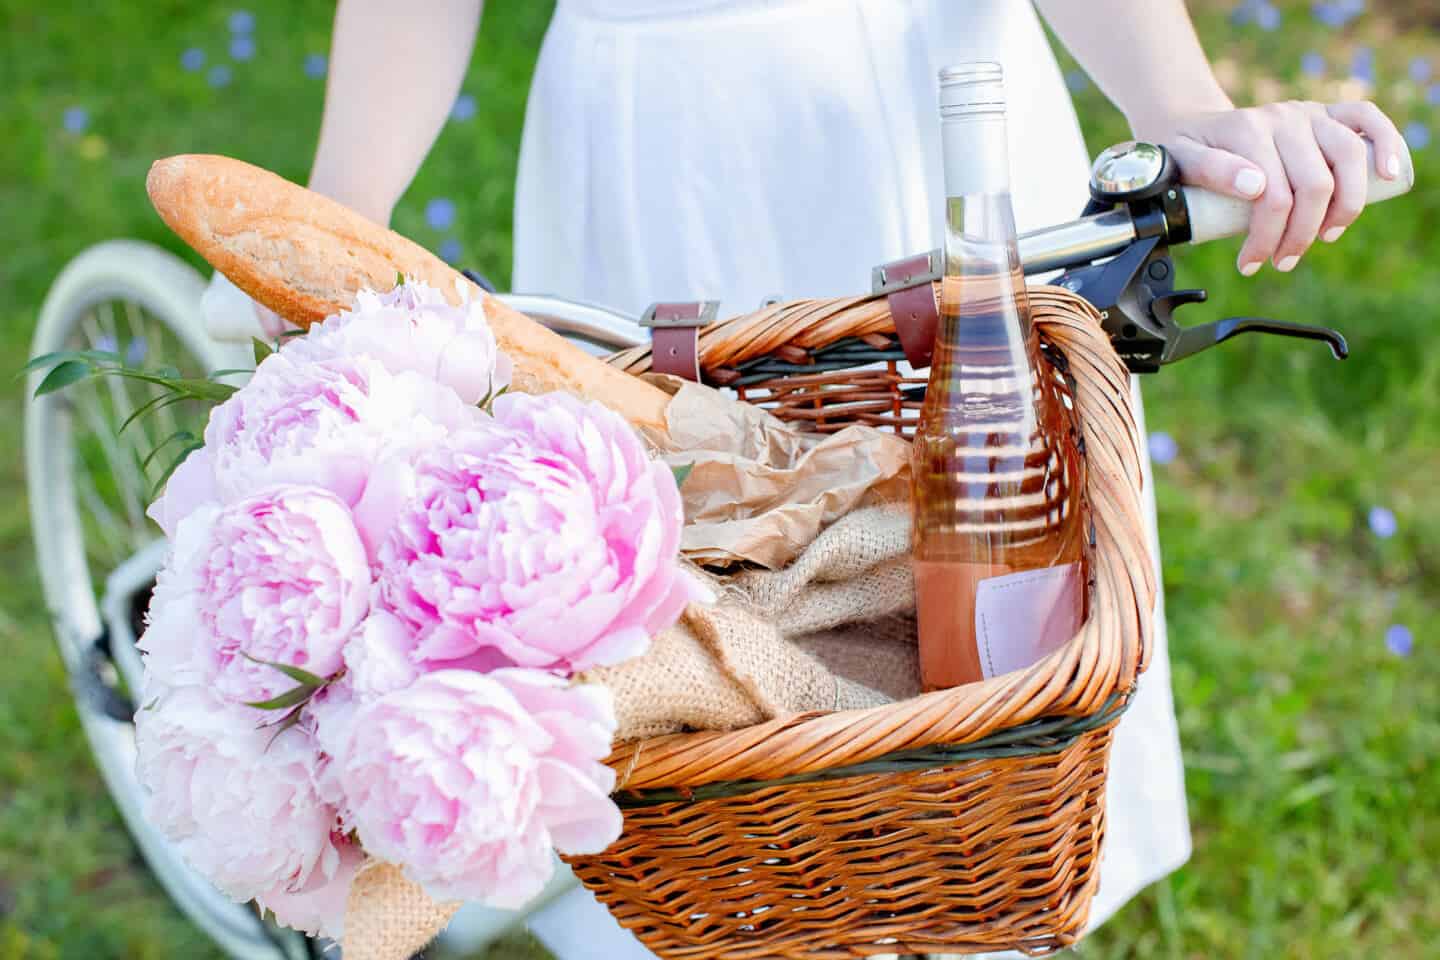 Ein Strauß blassrosa Pfingstrosenblüten liegt neben einem Baguette und einer Flasche Wein im Korb eines Fahrrads, auf dem eine junge weiße Frau fährt.